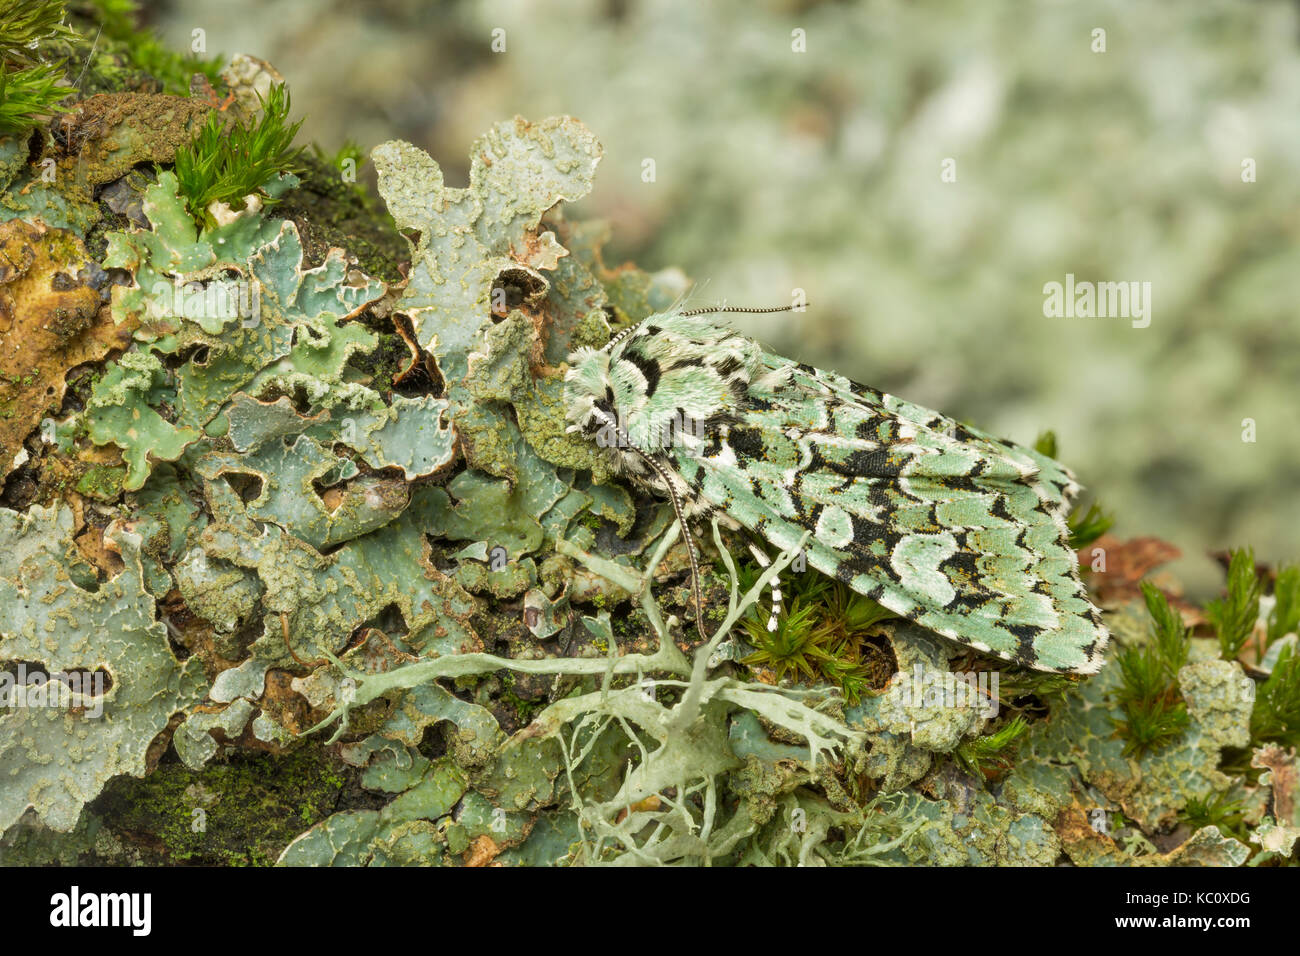 Merveille du Jour Tarma Dichonia aprilina, mimetizzata su lichen, Monmouthshire, Settembre. Foto Stock